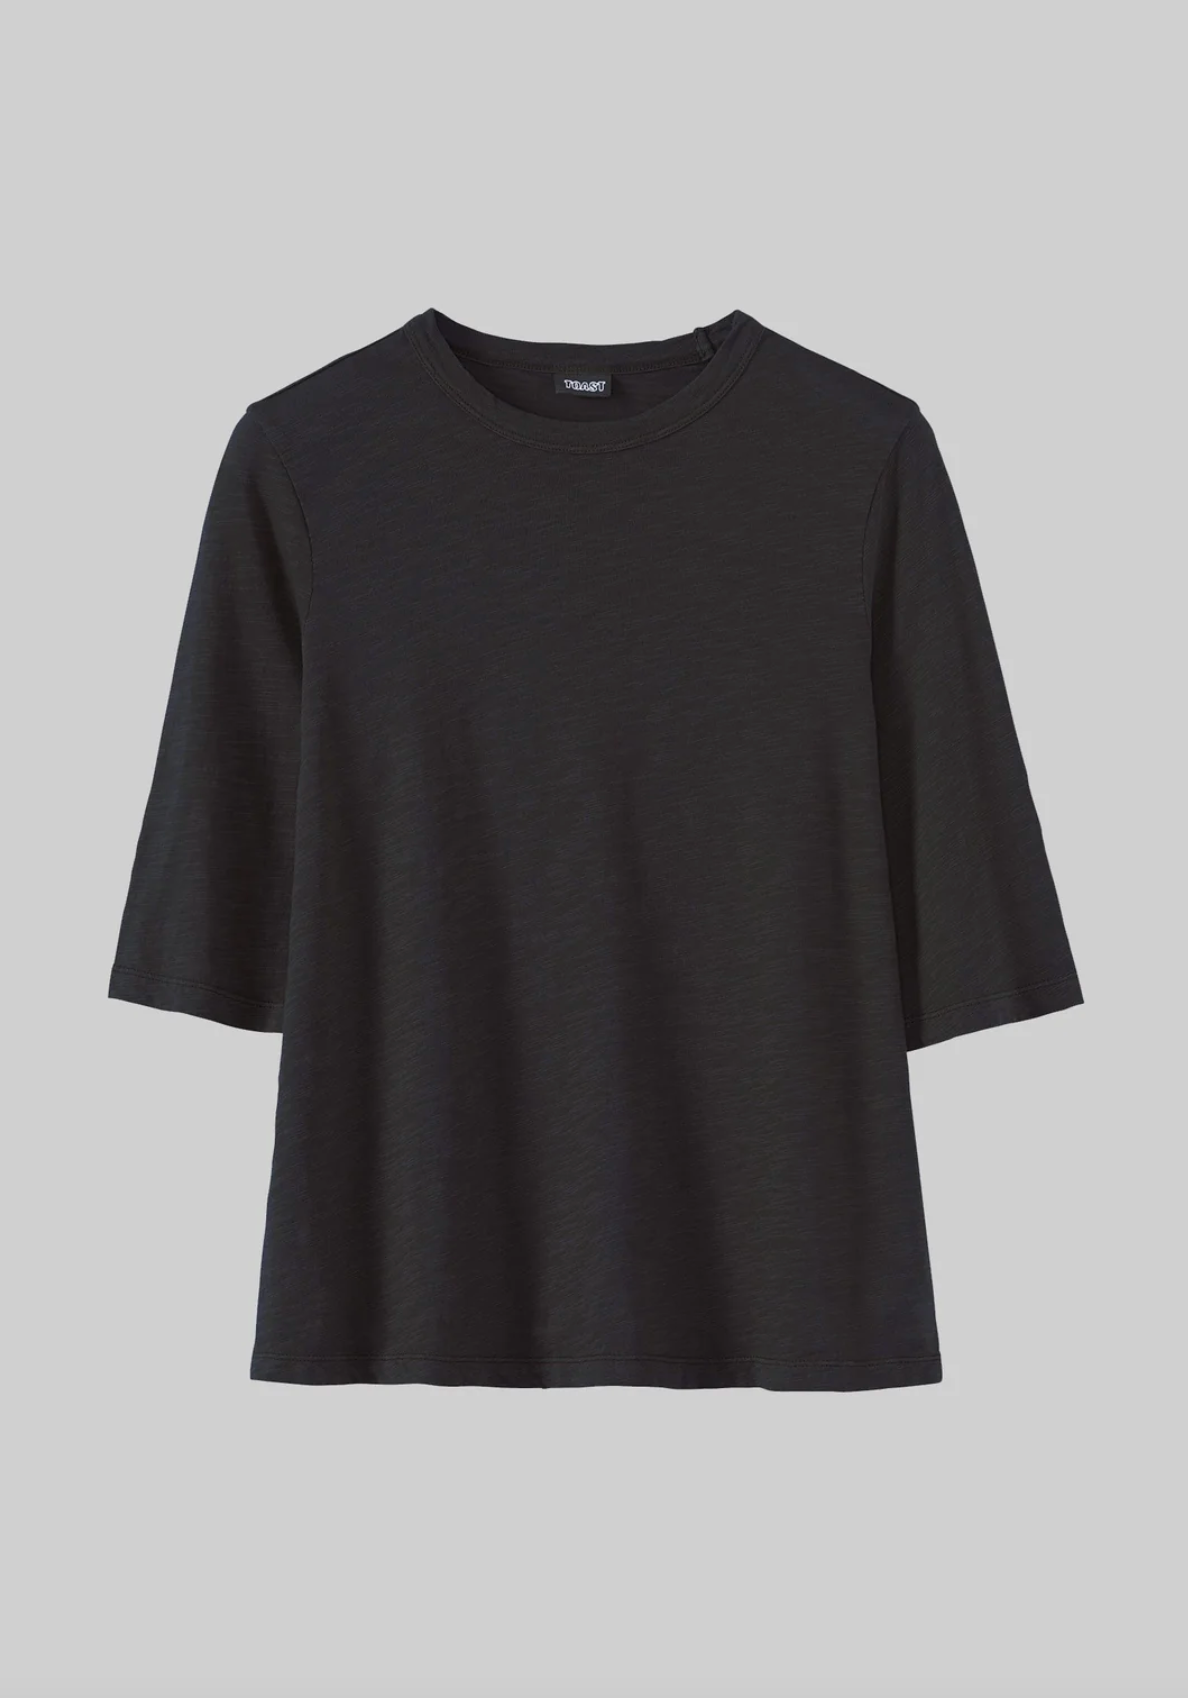 Cleo Garment Dyed Cotton T-Shirt Carbon Black